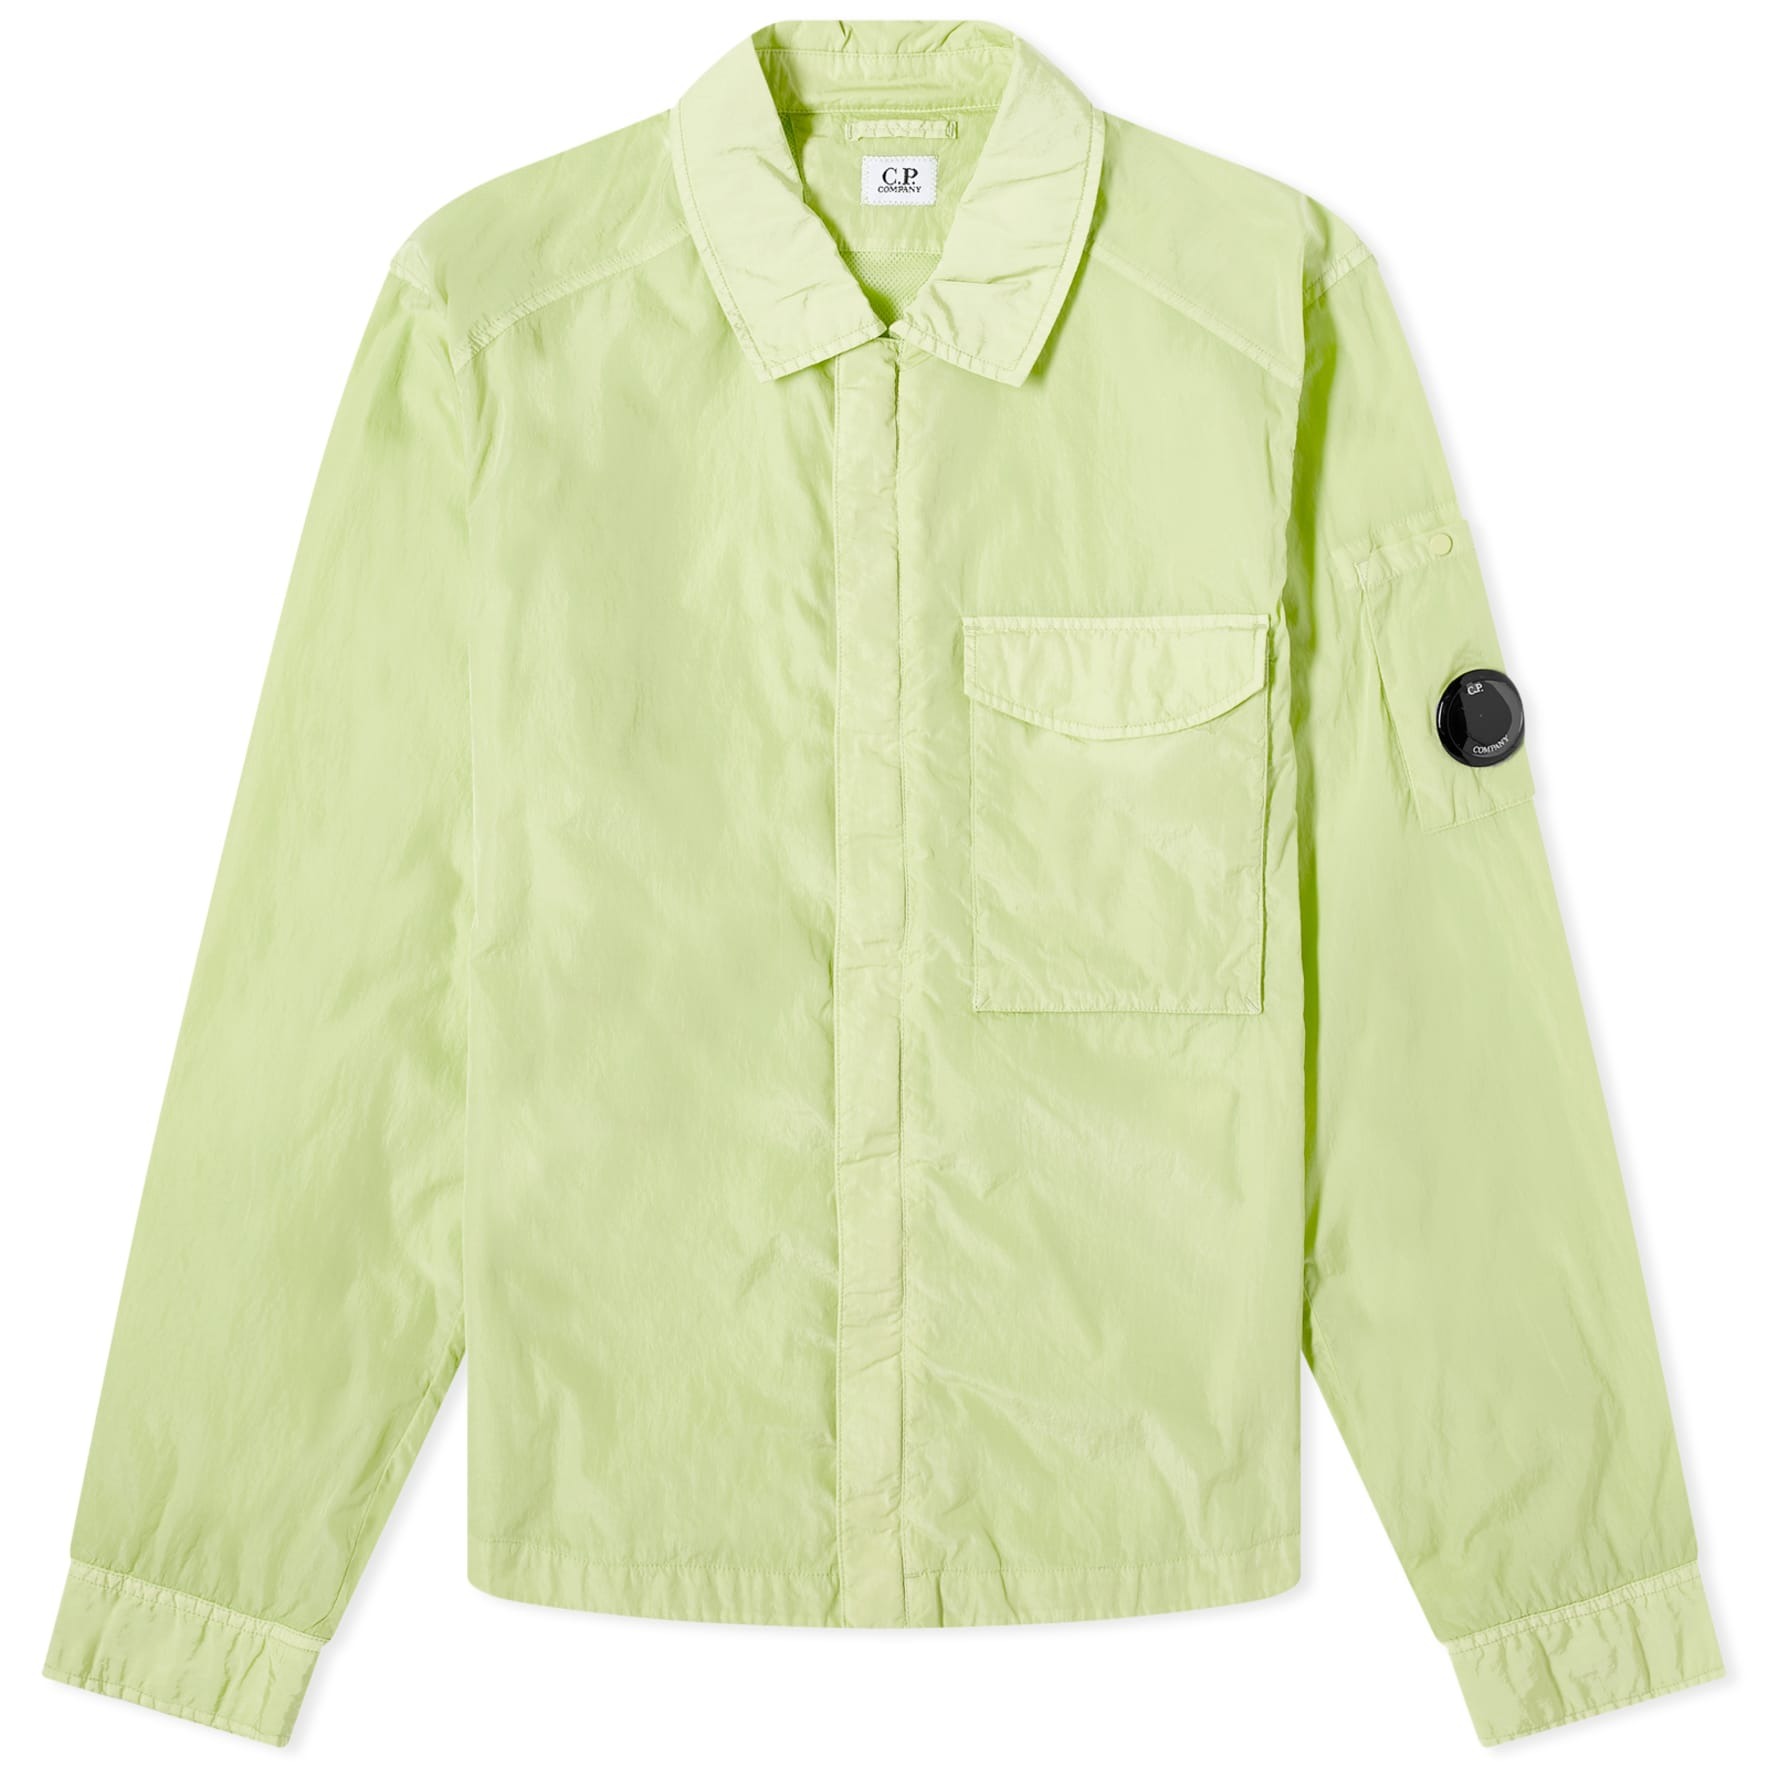 Куртка-рубашка C.P. Company Chrome-R Pocket, светло-зеленый куртка бомбер chrome r c p company kids зеленый